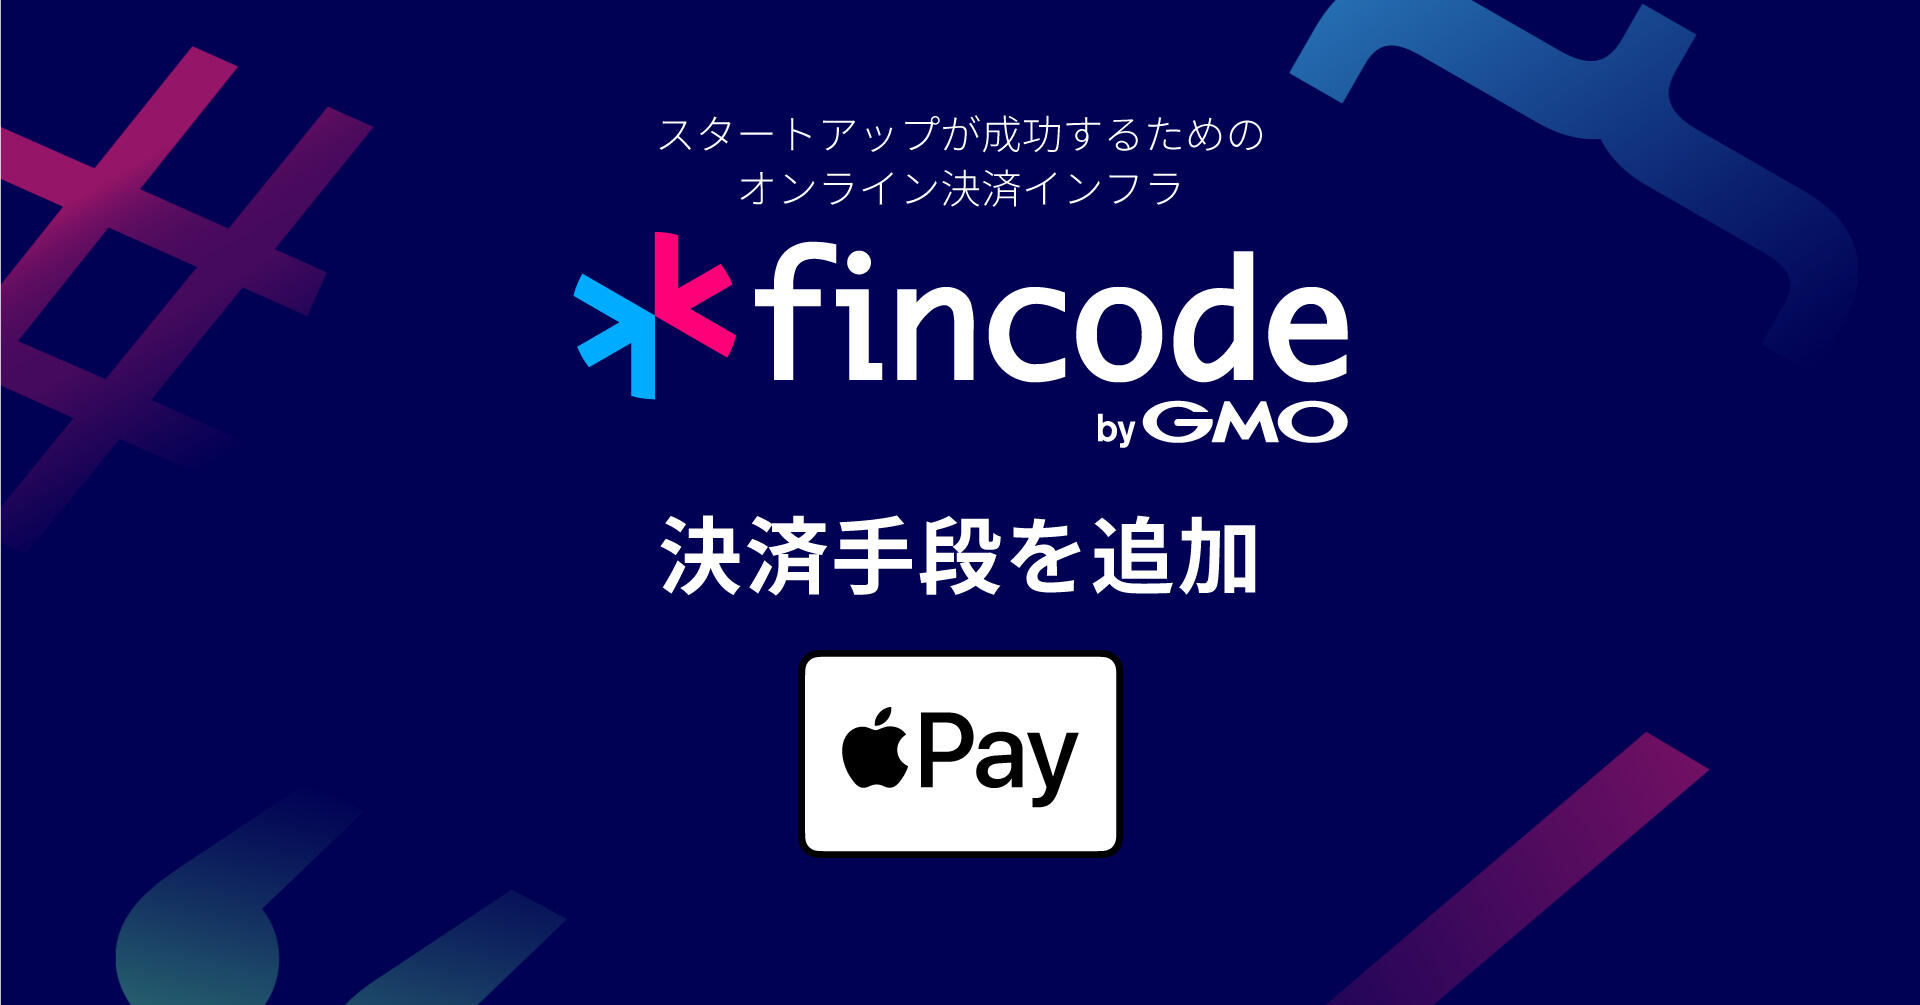 スタートアップ向けオンライン決済インフラ「fincode(フィンコード) byGMO」、決済手段に「Apple Pay」を追加